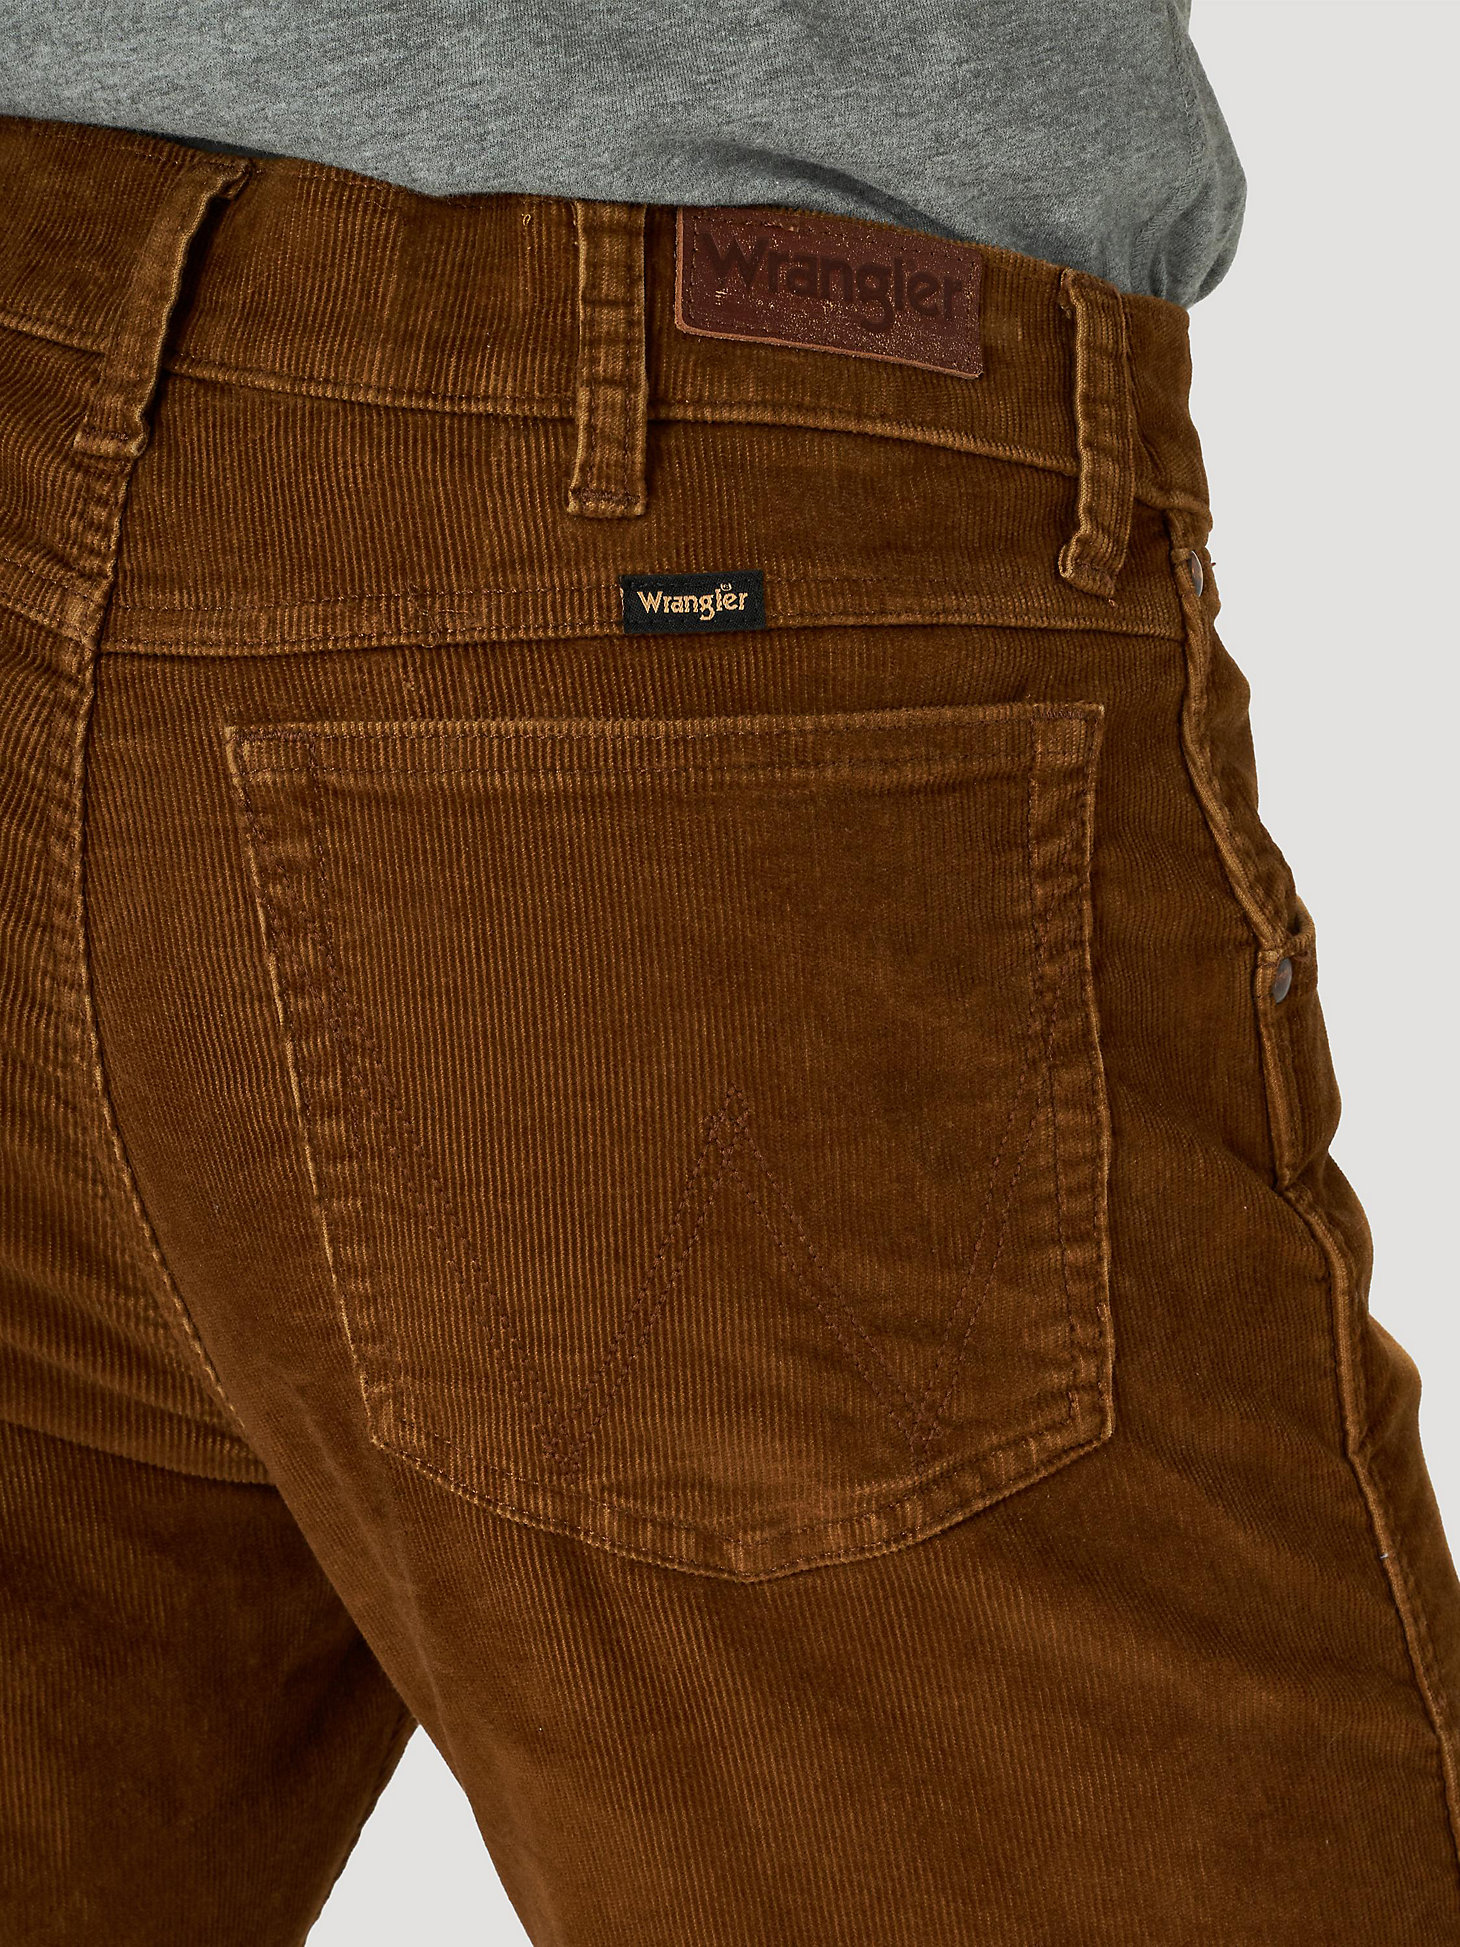 Men's Wrangler® Regular Tapered Corduroy Jeans in Monks Robe alternative view 2